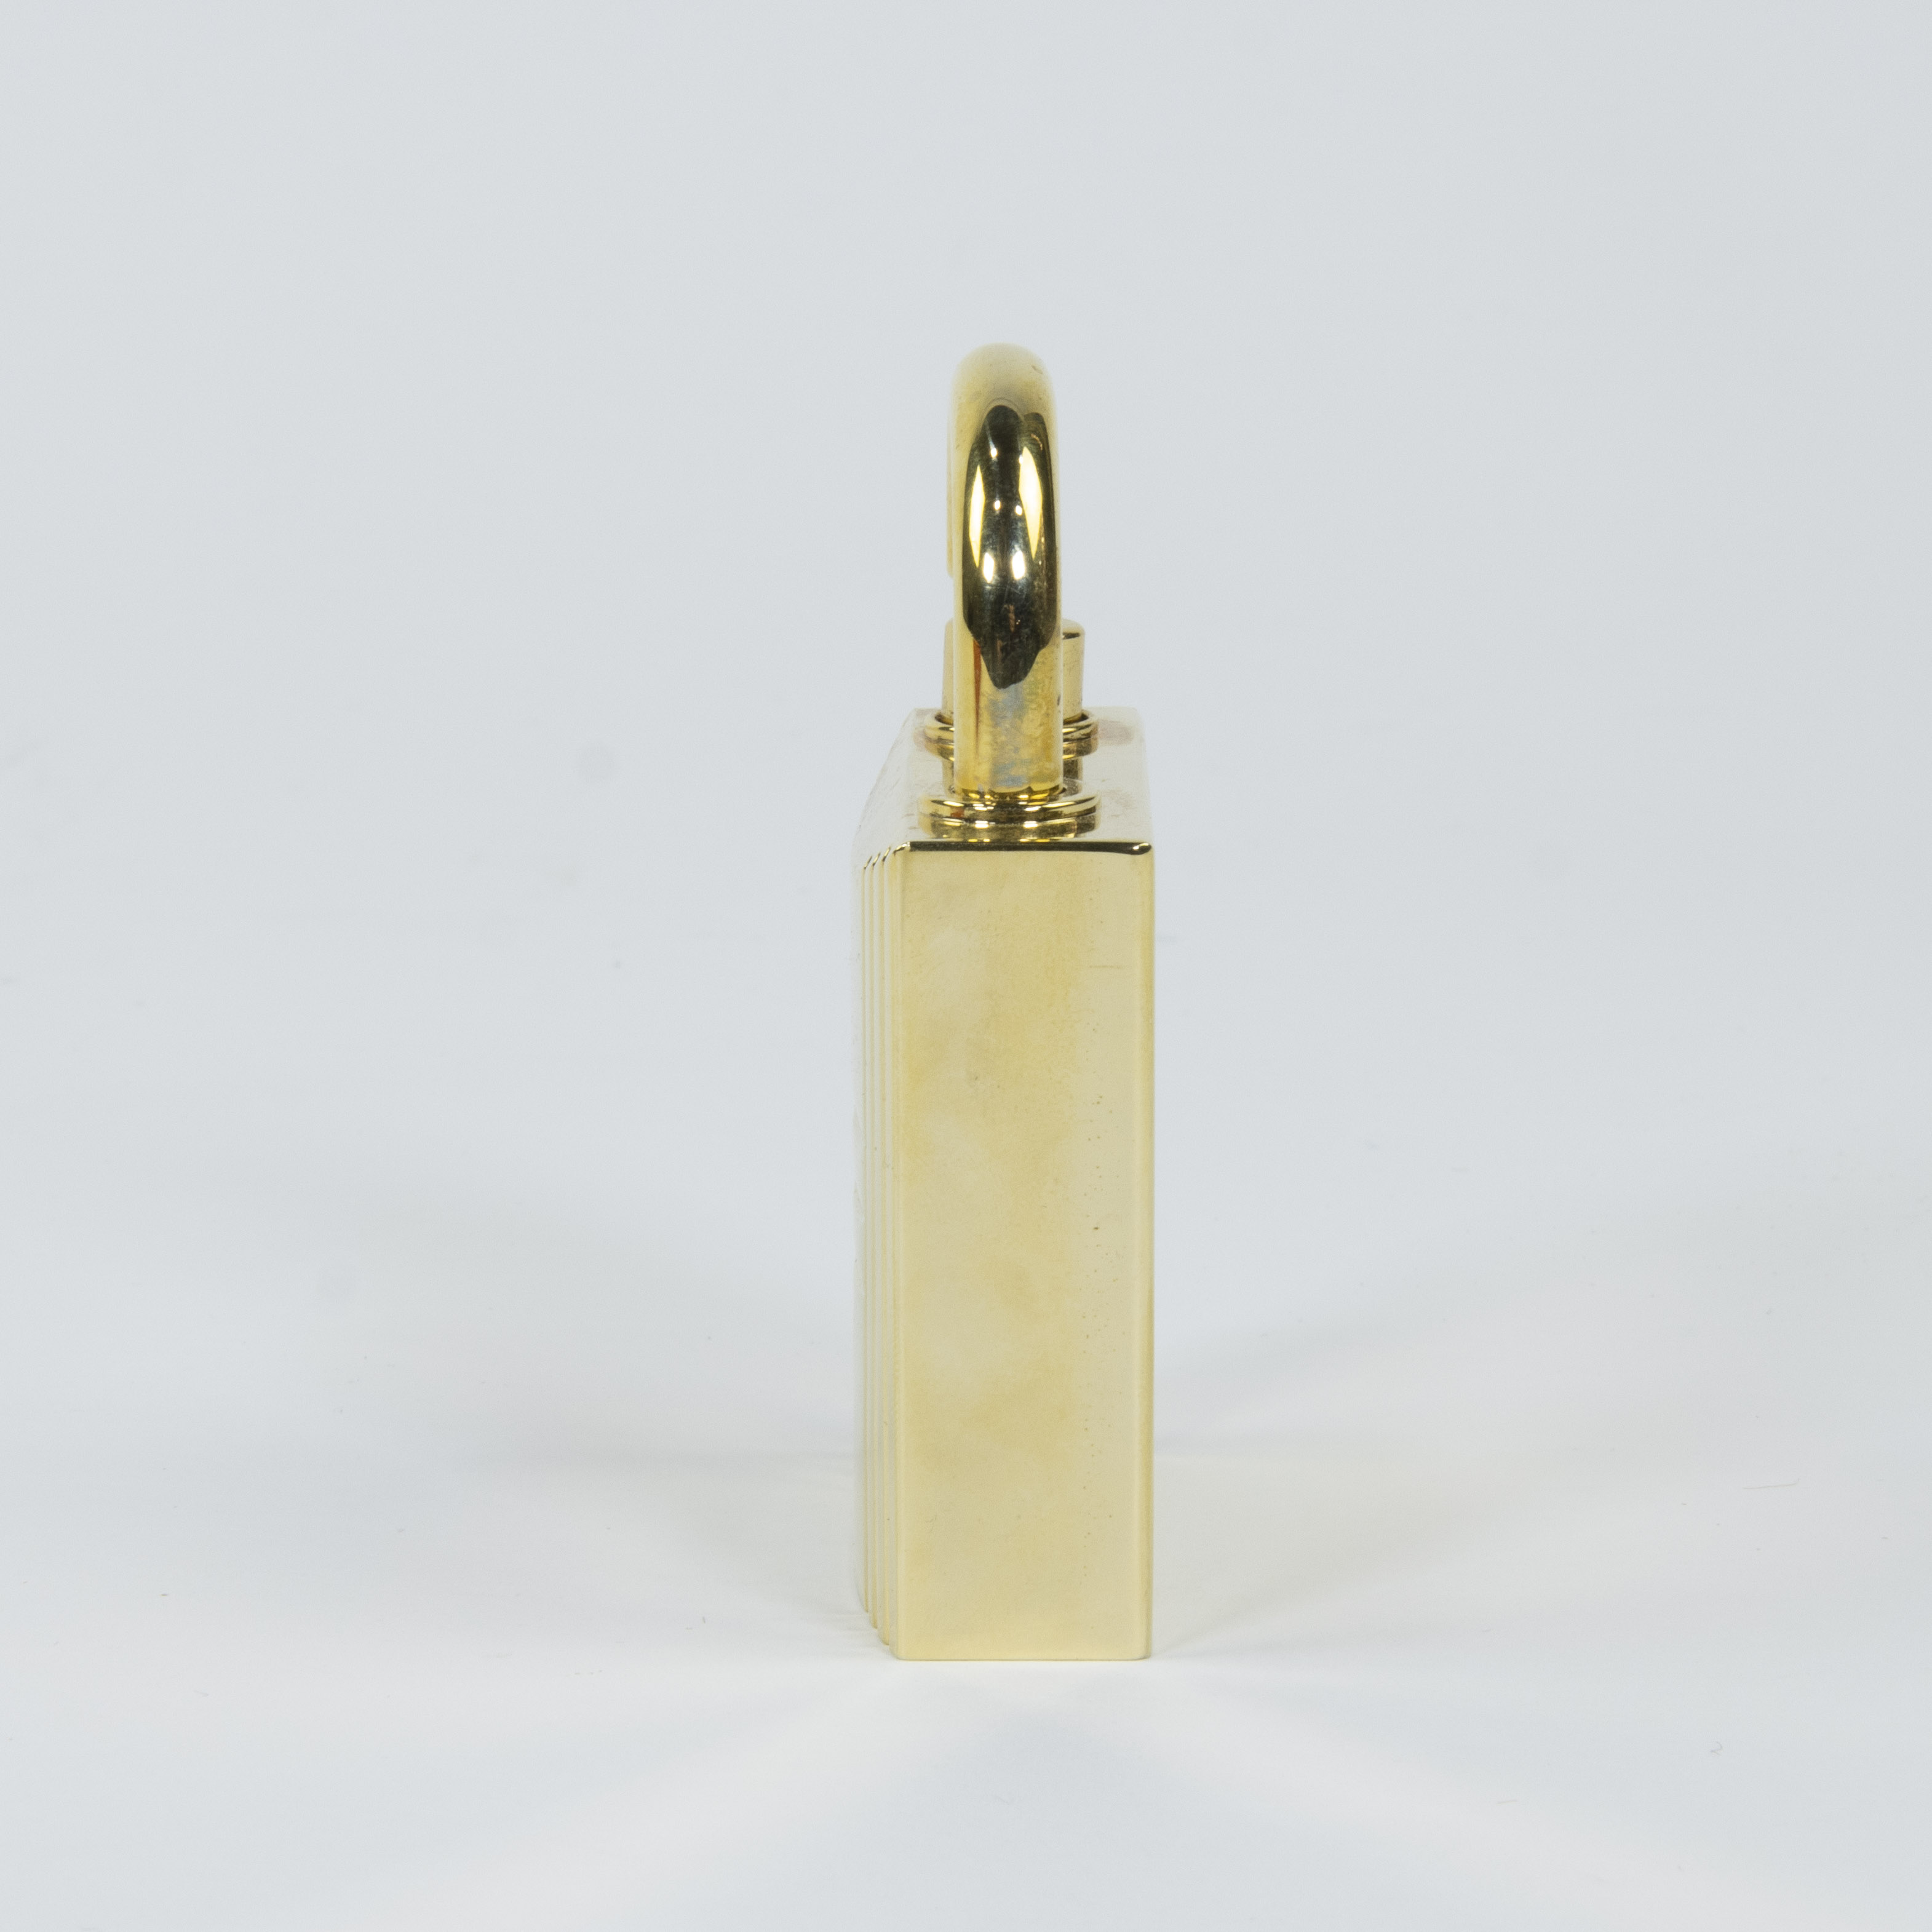 Gilded perfume burner Hermes in original box - Image 2 of 5